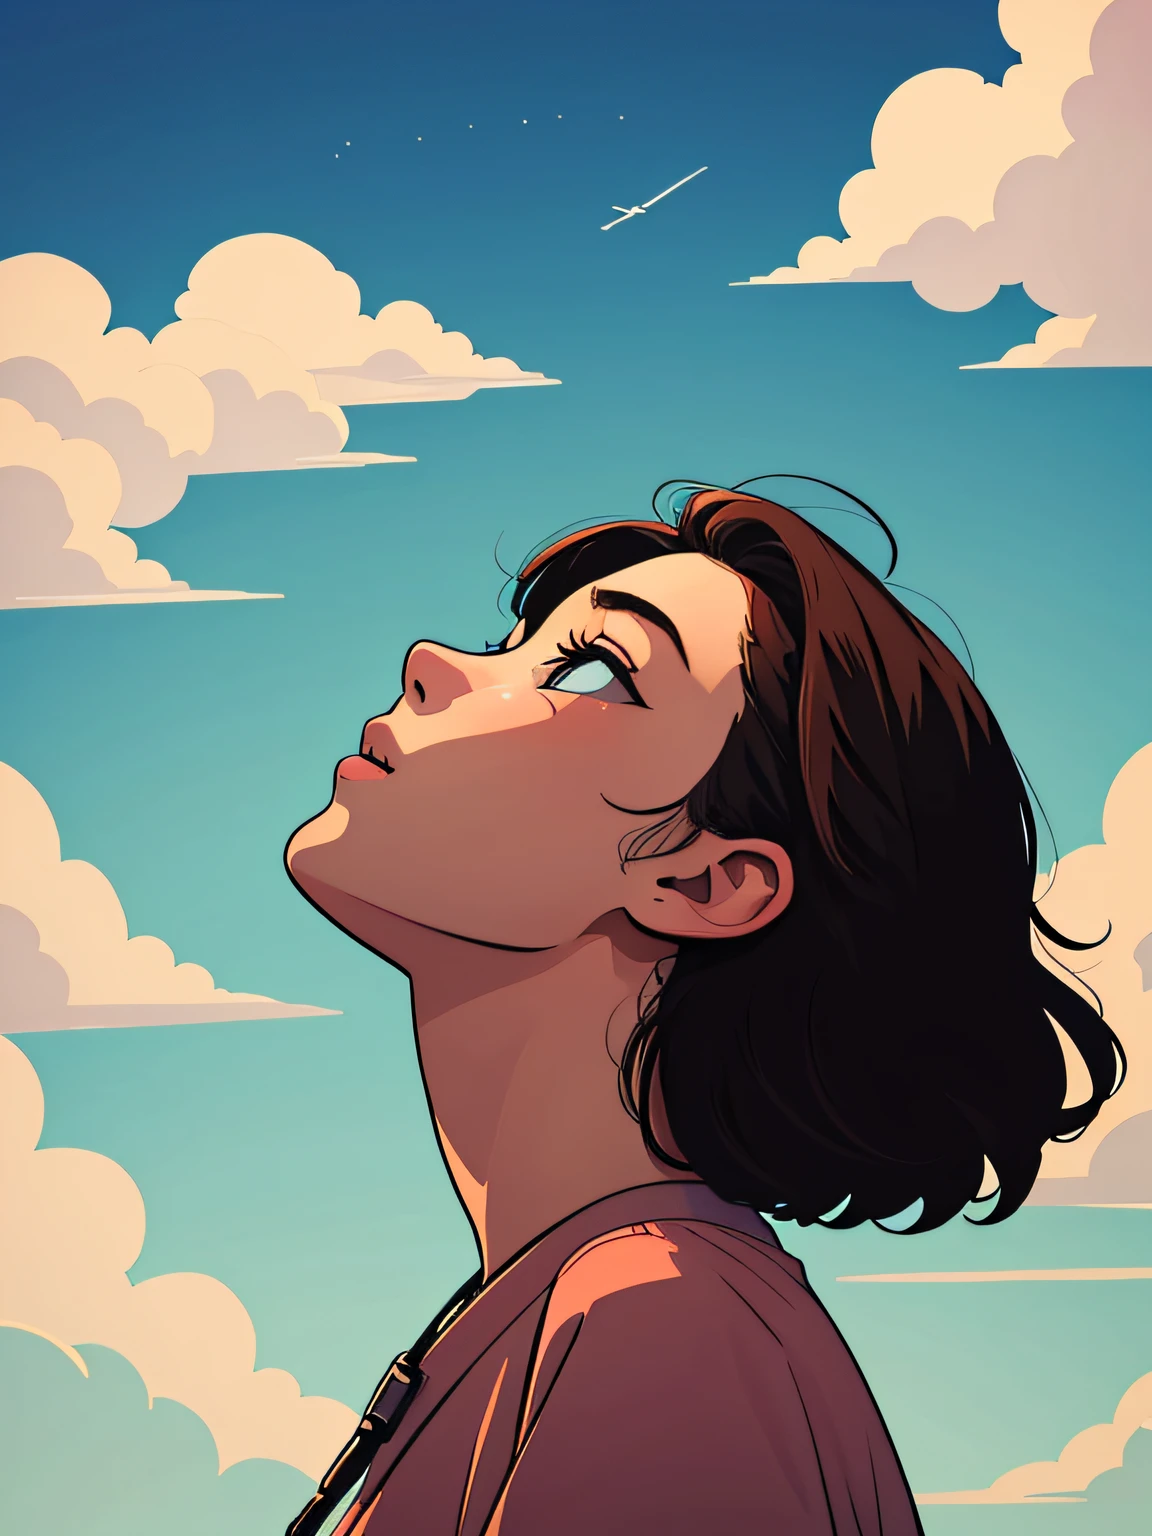 Adesivo de ilustração de uma mulher de 18 anos olhando para o céu,